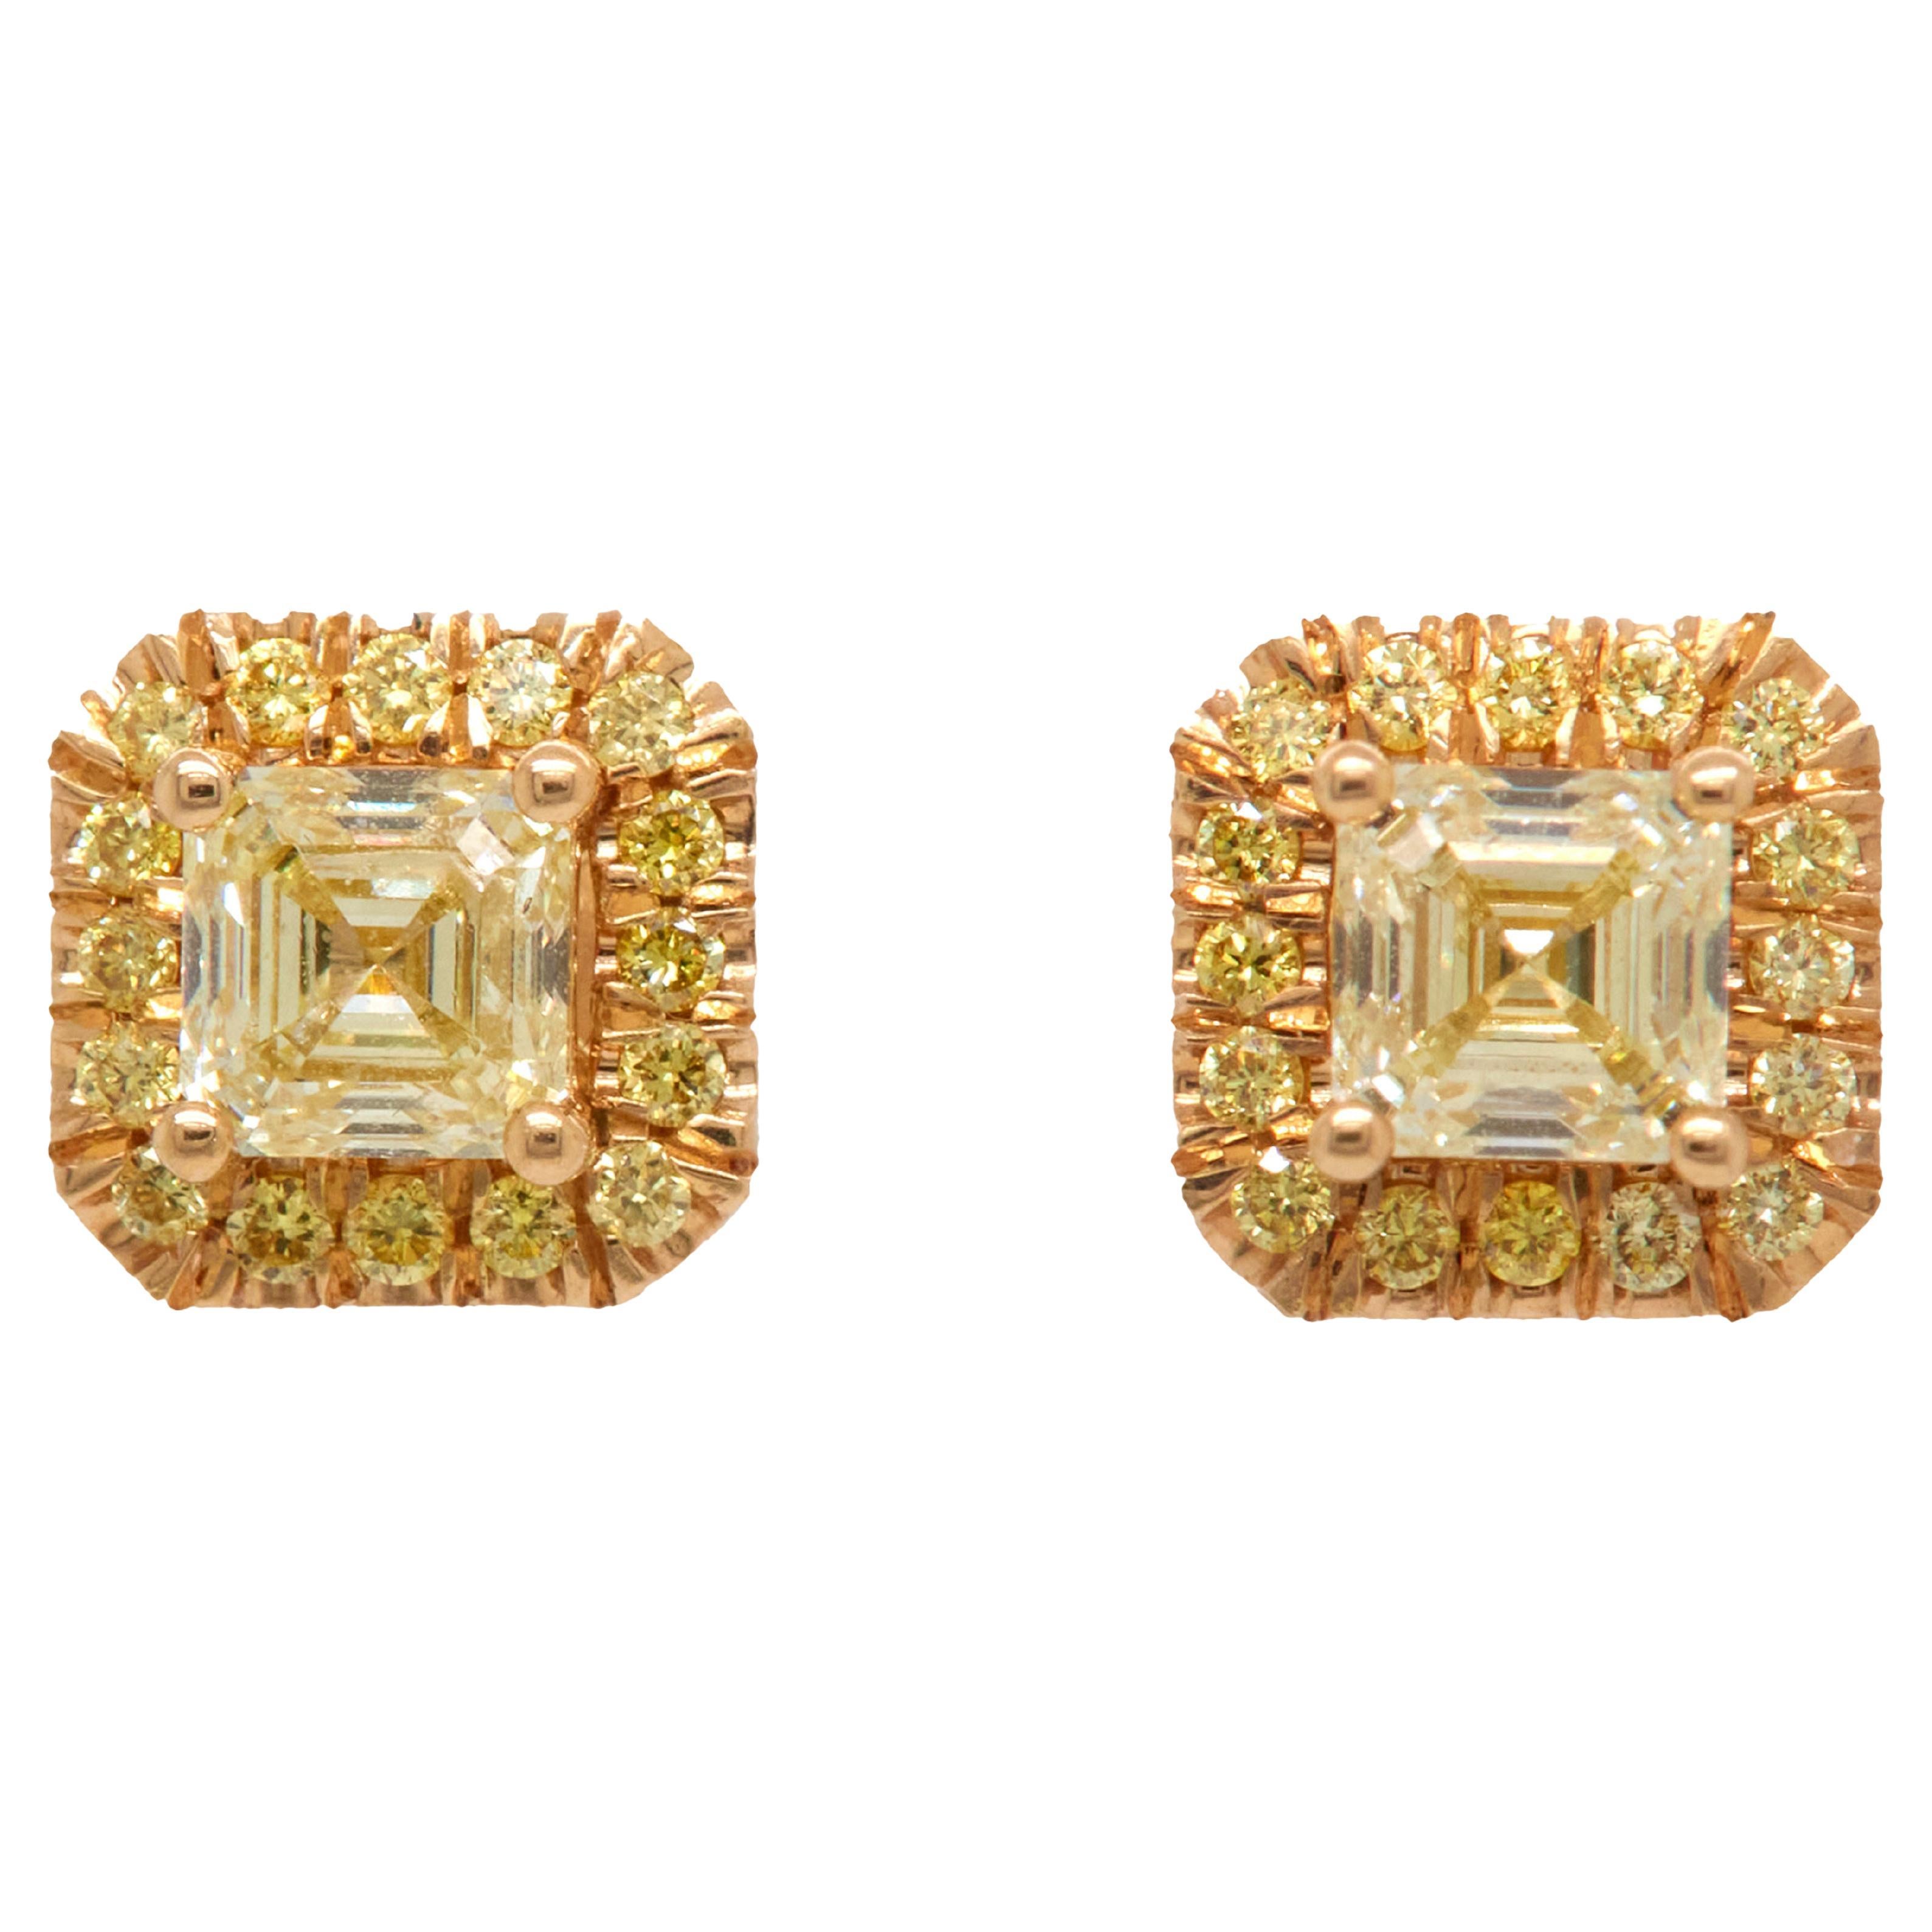 1.45 Carat Asscher Cut Yellow Diamonds Stud Earrings, 18K Yellow Gold